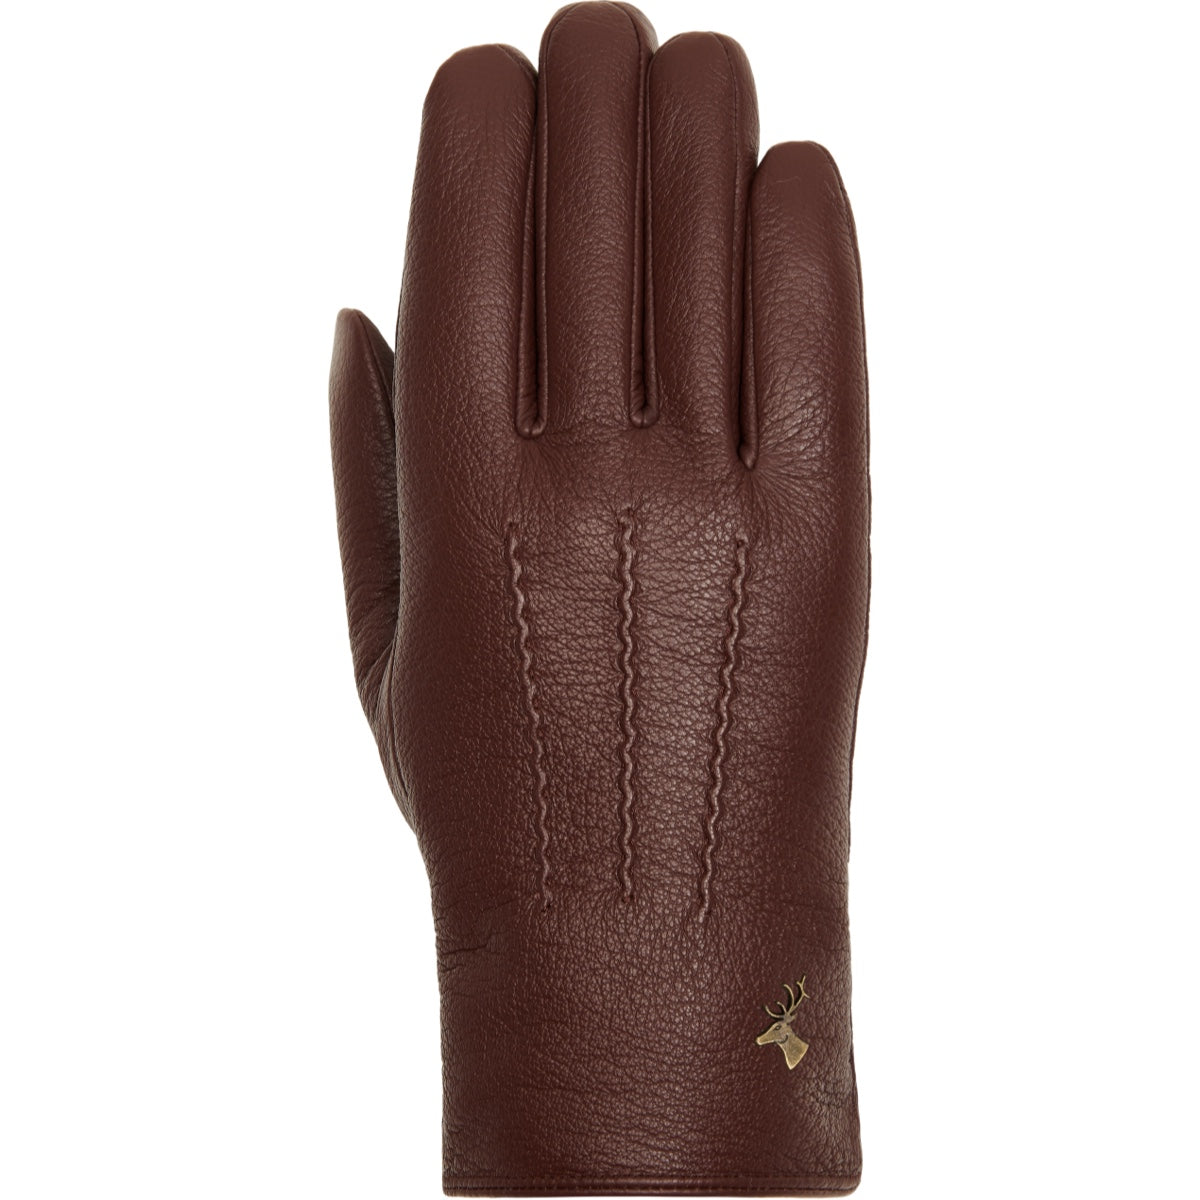 Brown Leather Gloves Men Jaxon - Schwartz & von Halen® - Premium Leather Gloves - 1